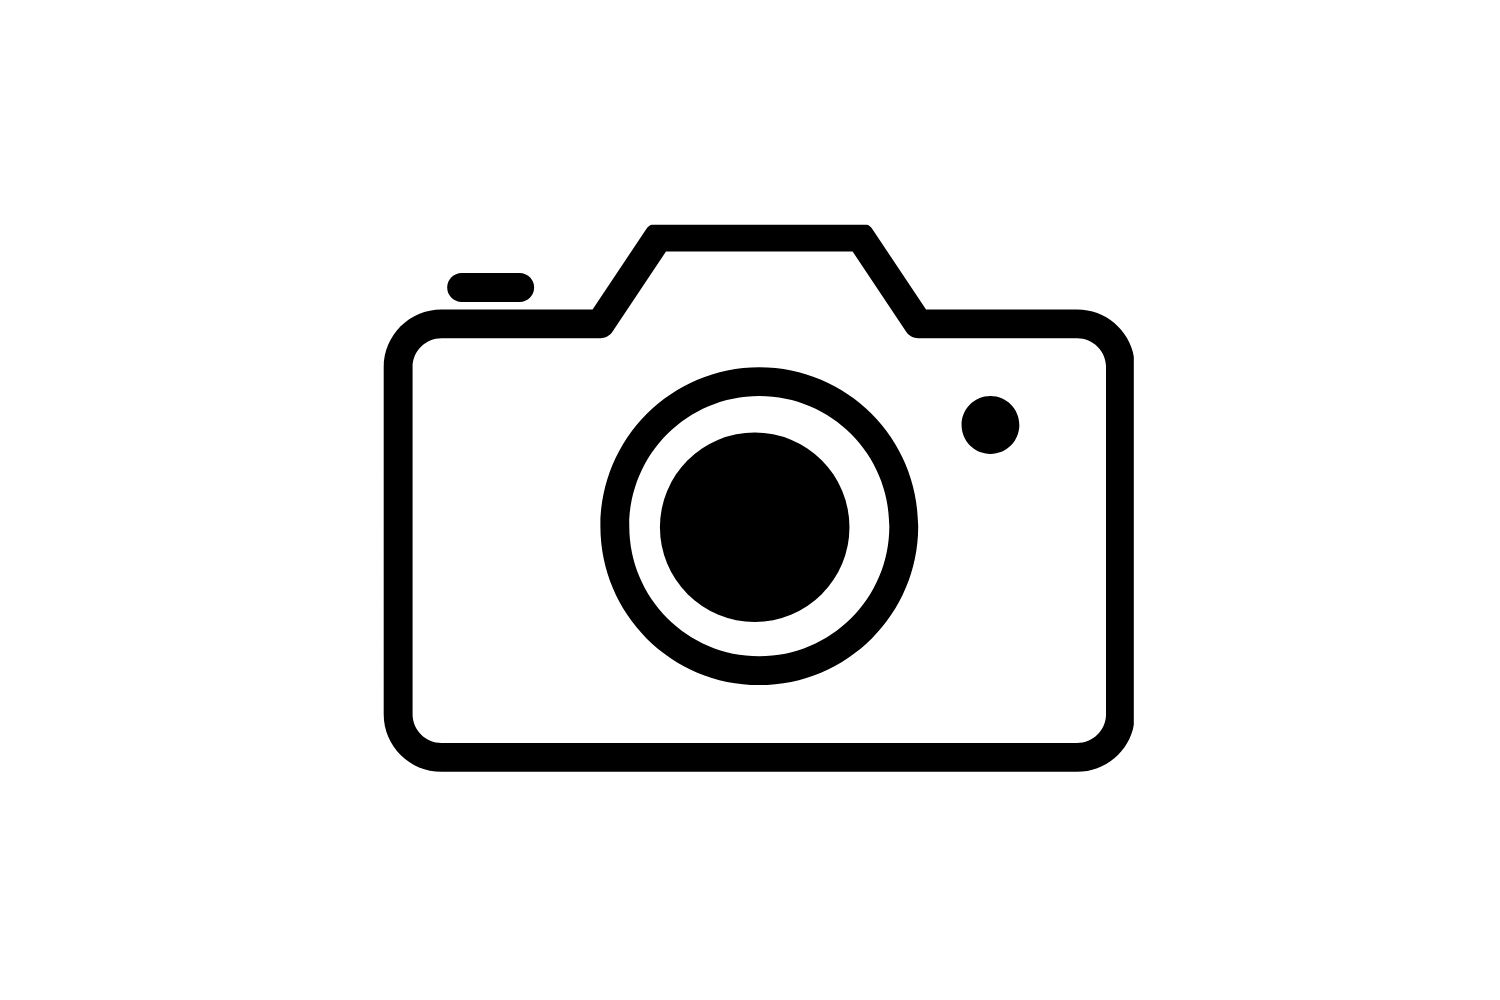 Camera SVG